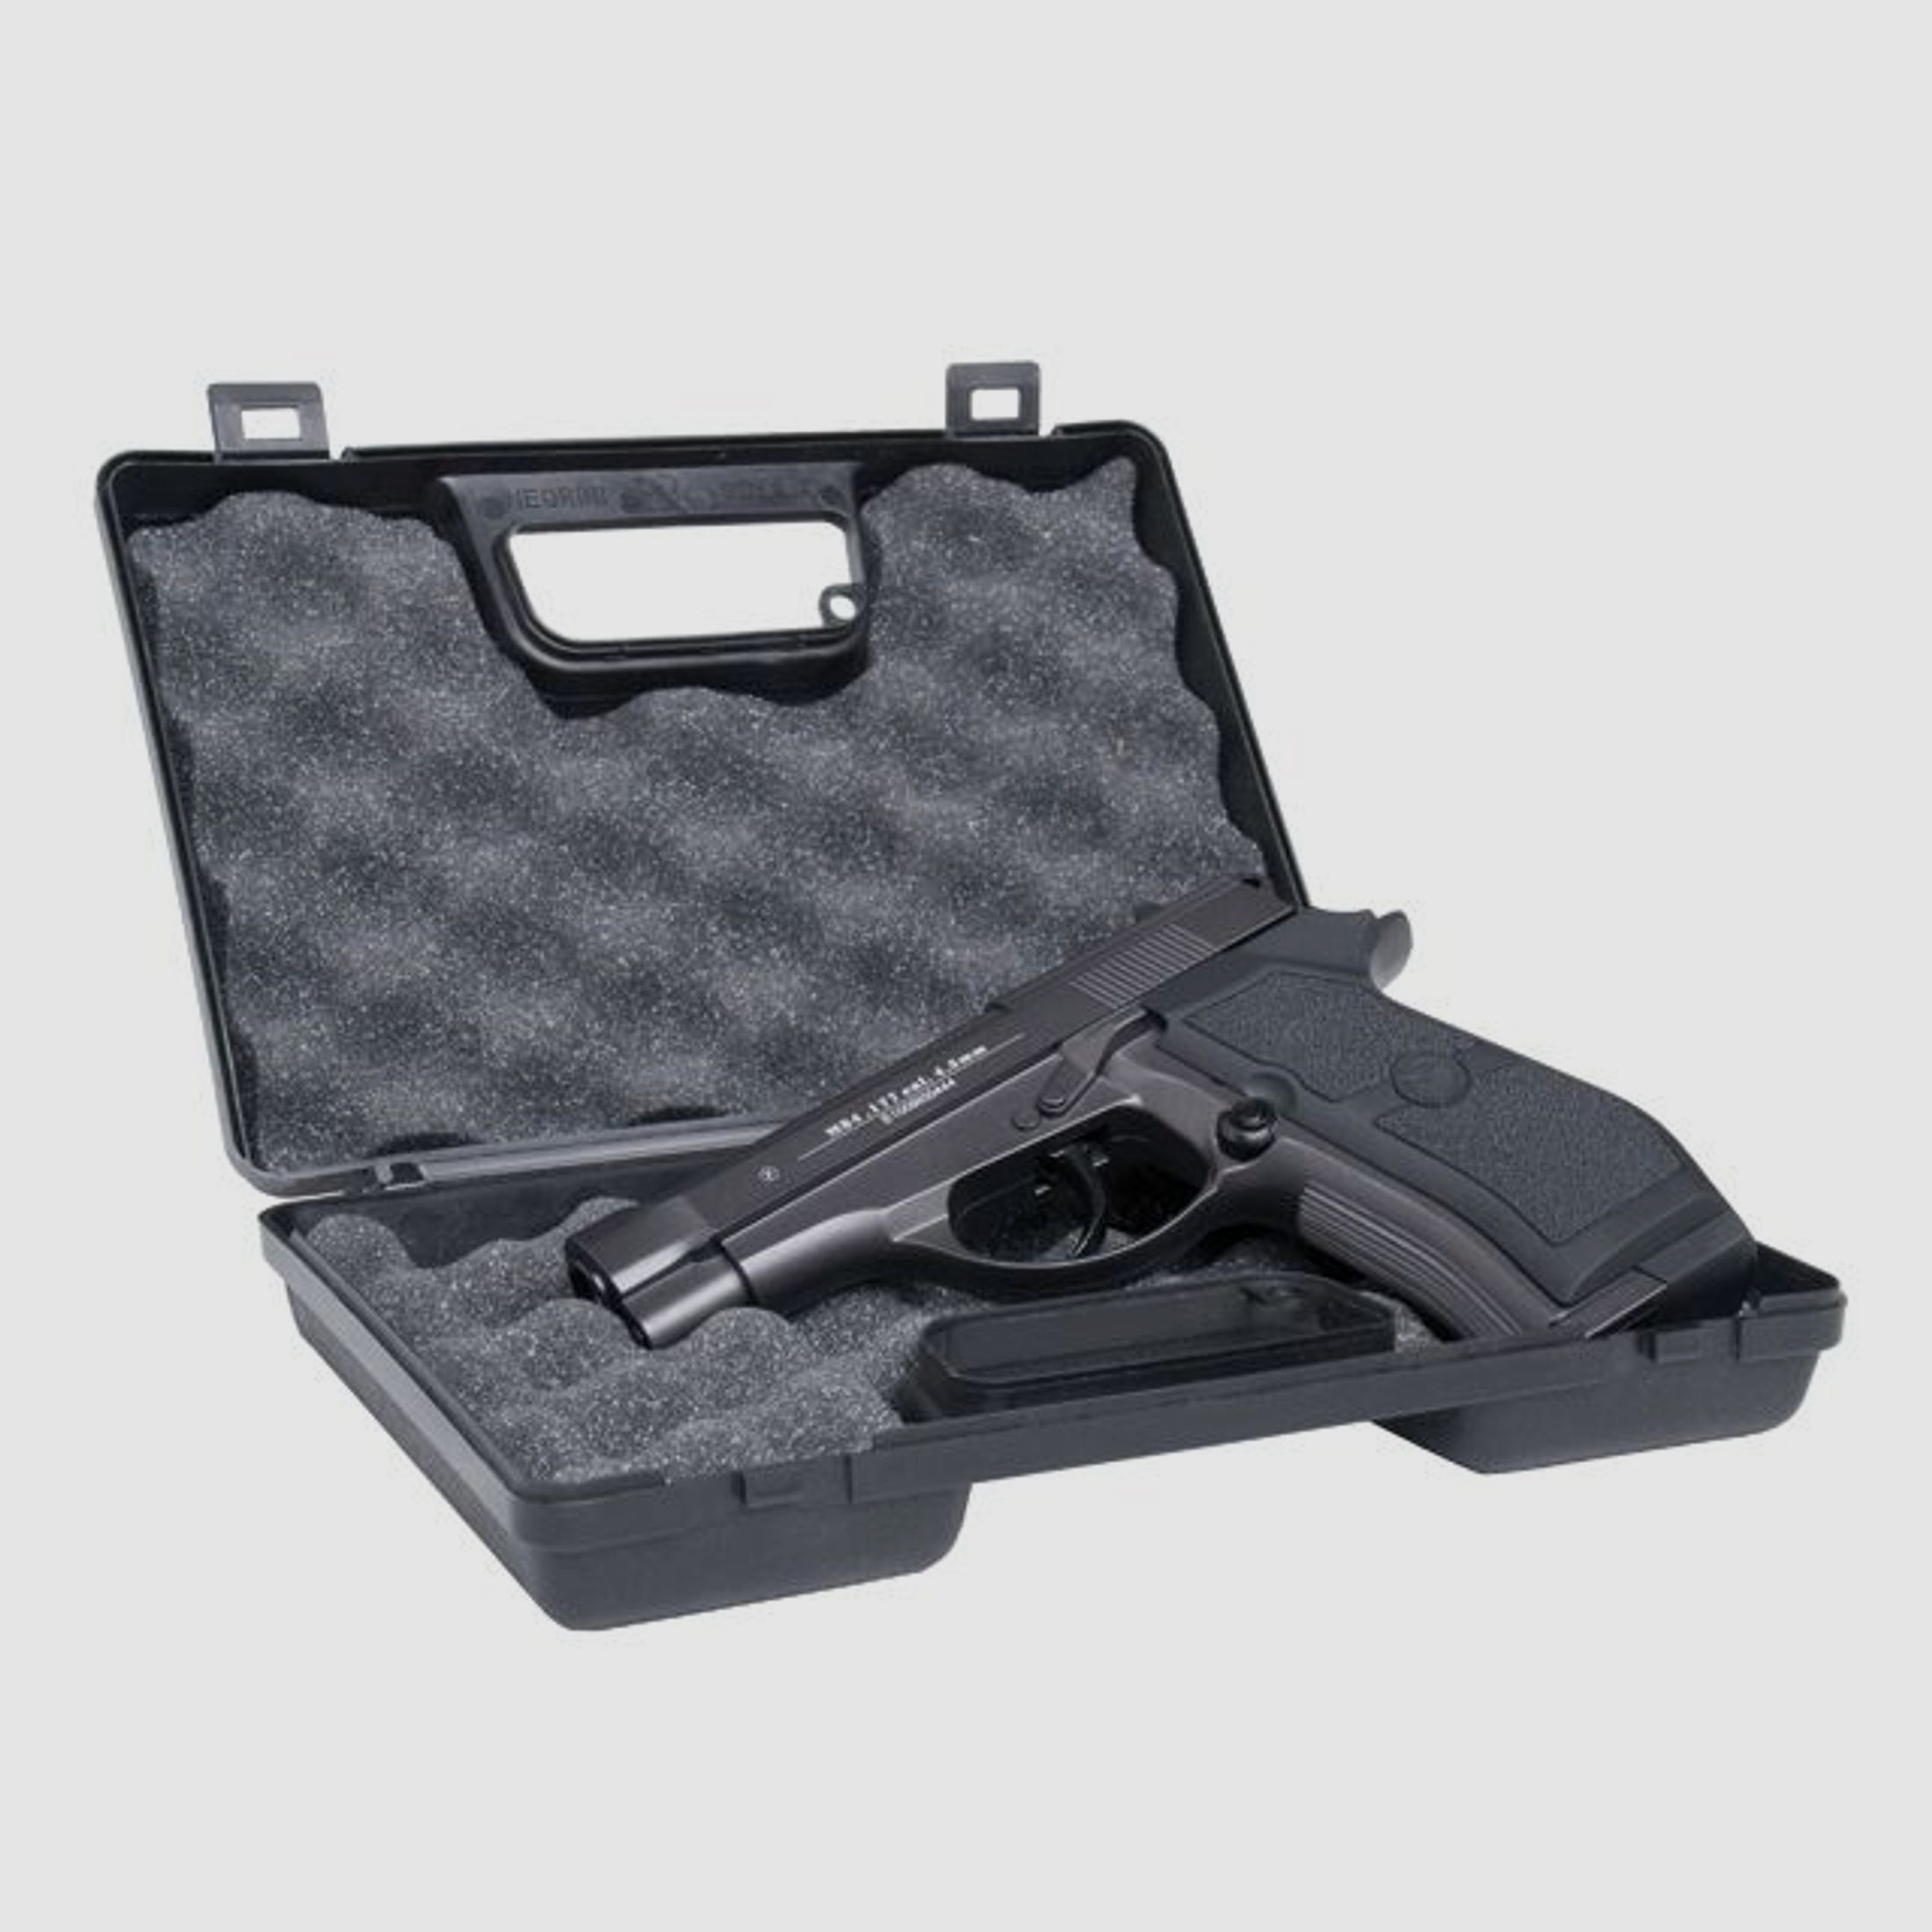 GSG Pistolen Koffer SMALL - Transportbehältnis Kurzwaffe Pistole Revolver 22cm x 14cm abschließbar